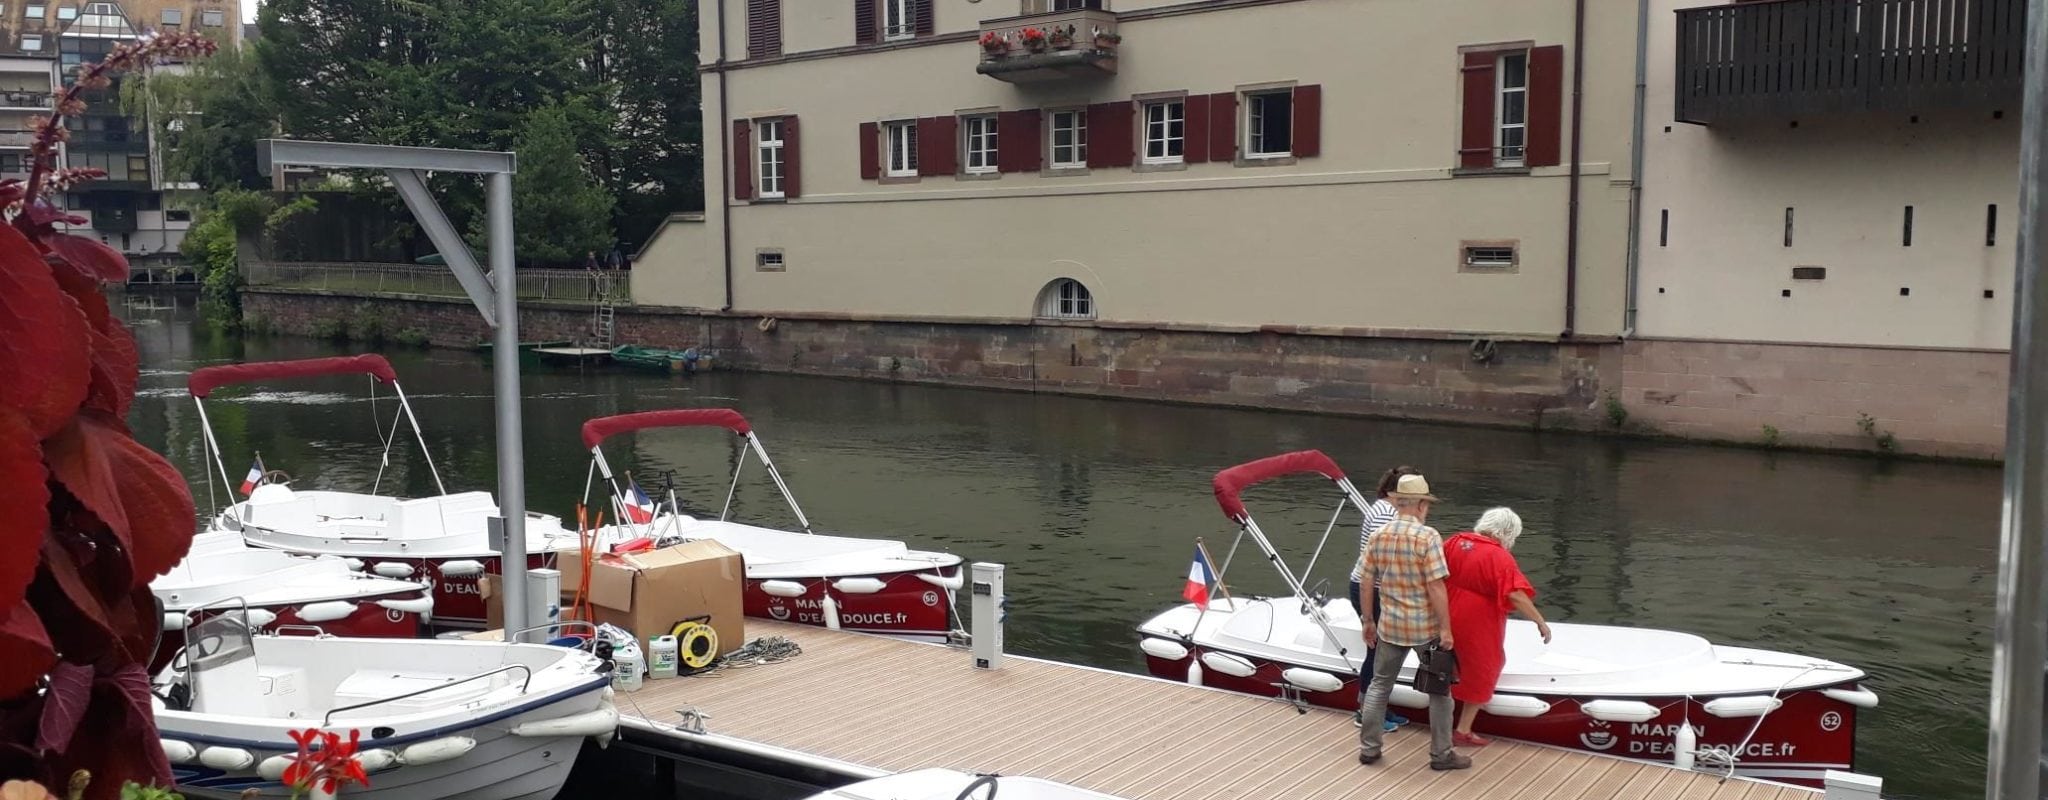 Les bateaux électriques sans-permis pour naviguer sur l’Ill disponibles cet été